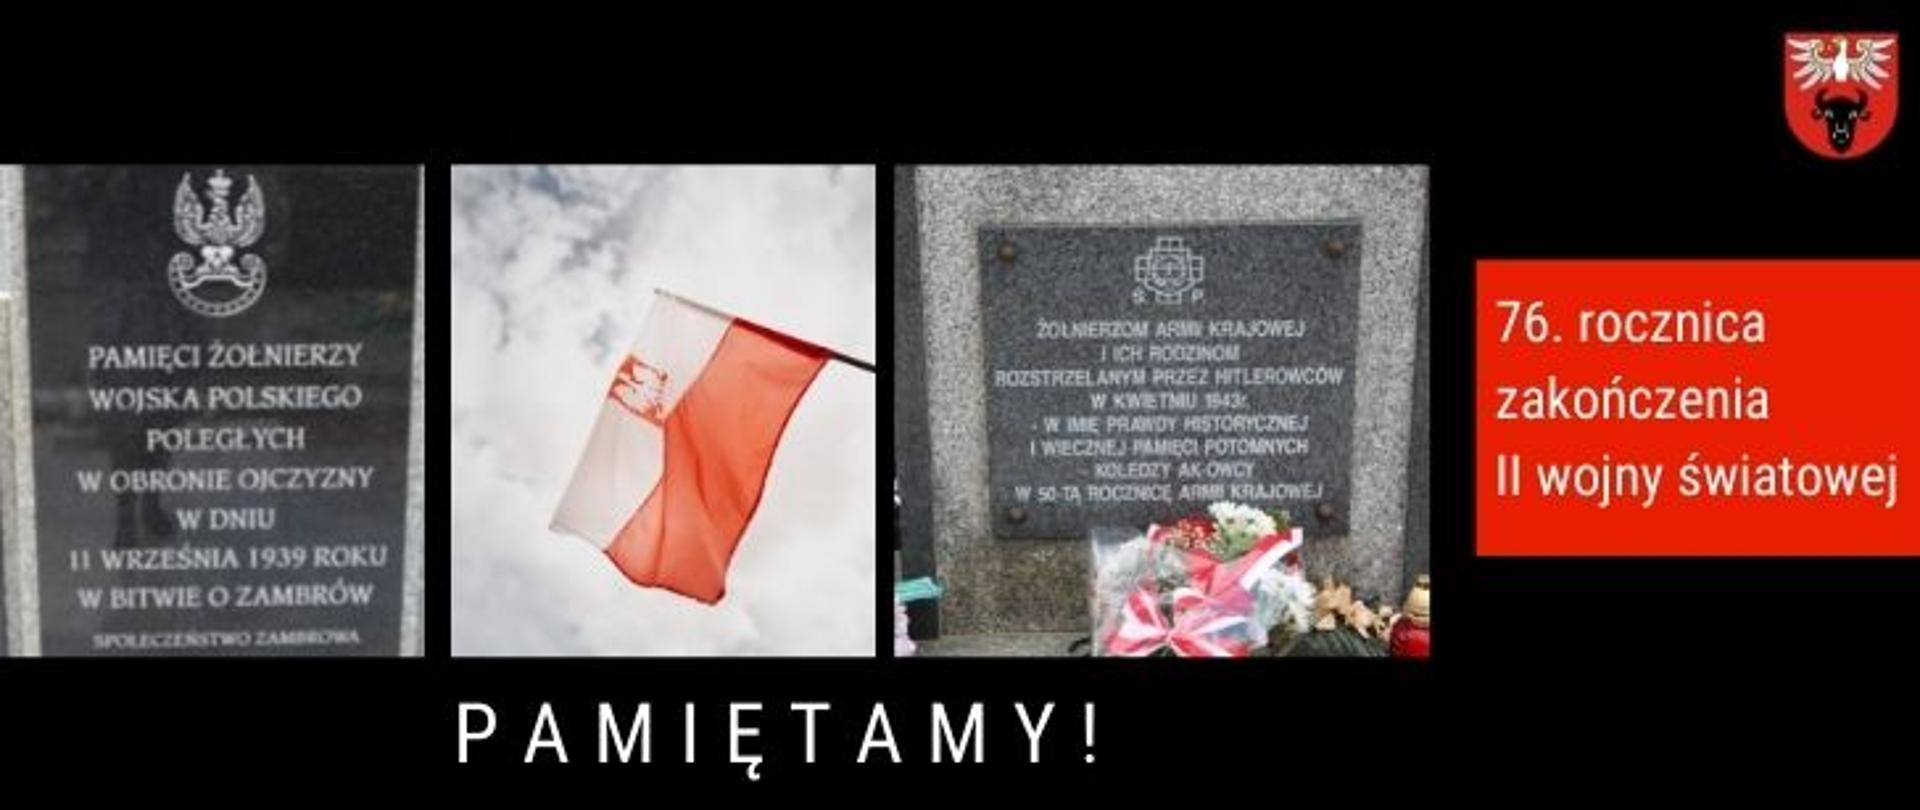 na zdjęciu znajdują się fotografie dwóch pomików znajdujących się na cmentarzu w
Zambrowie, pomiędzy pomnikami zdjęcie flagi z orłem RP, z prawej strony na czerwonym tele jest napis "76. rocznica zakończenia II wojny światowej", w prawym górnym rogu logo powiatu zambrowskiego, na dole wyśrodkowany jest napis "PAMIĘTAMY!"